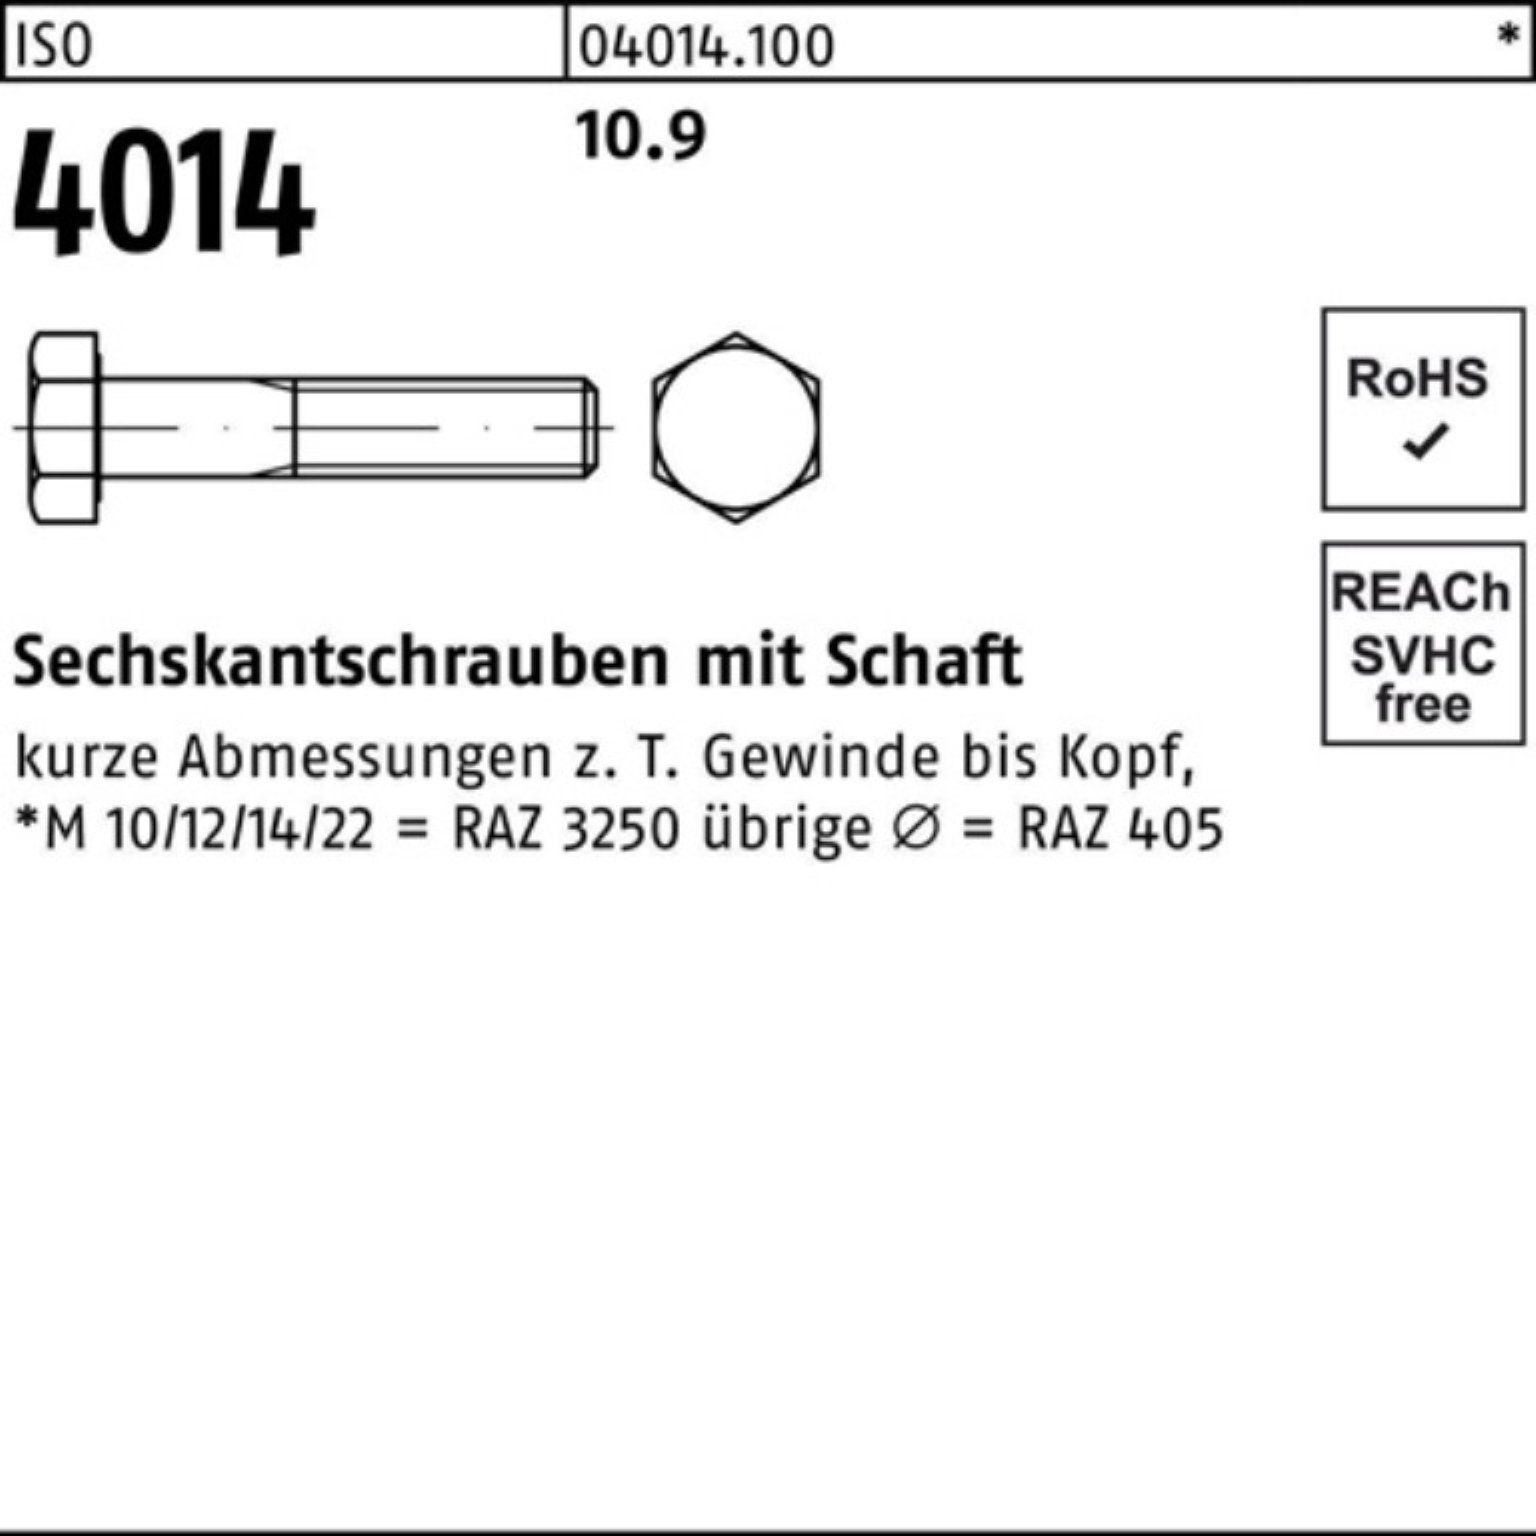 Bufab Sechskantschraube 200er Schaft 4014 10.9 200 ISO IS 35 M6x Stück Sechskantschraube Pack